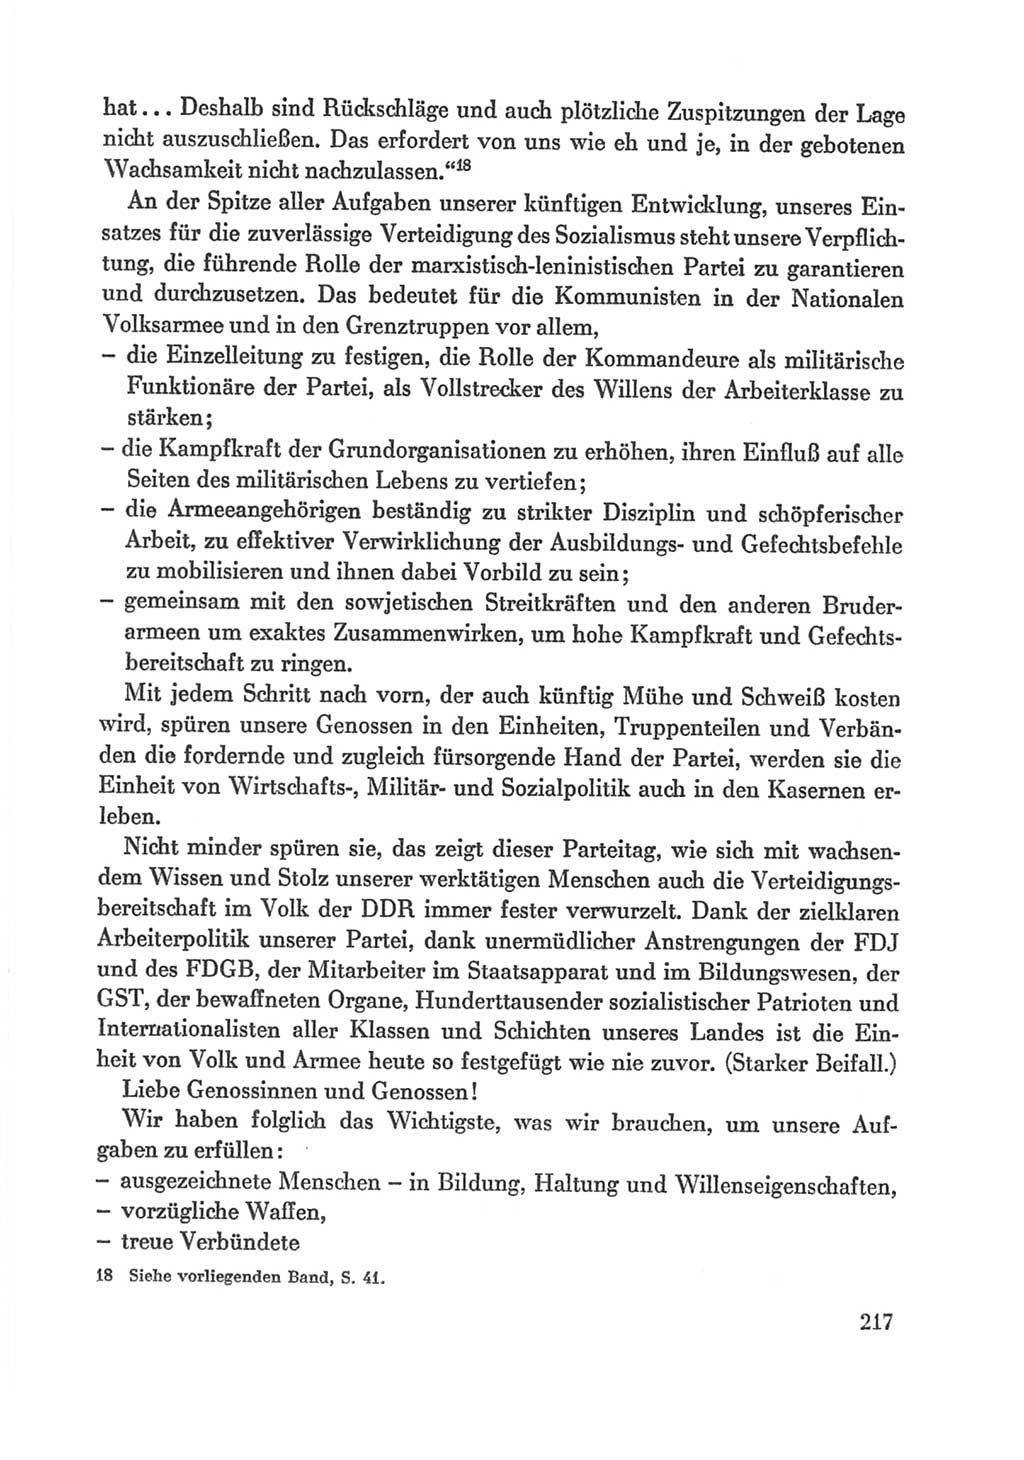 Protokoll der Verhandlungen des Ⅸ. Parteitages der Sozialistischen Einheitspartei Deutschlands (SED) [Deutsche Demokratische Republik (DDR)] 1976, Band 1, Seite 217 (Prot. Verh. Ⅸ. PT SED DDR 1976, Bd. 1, S. 217)